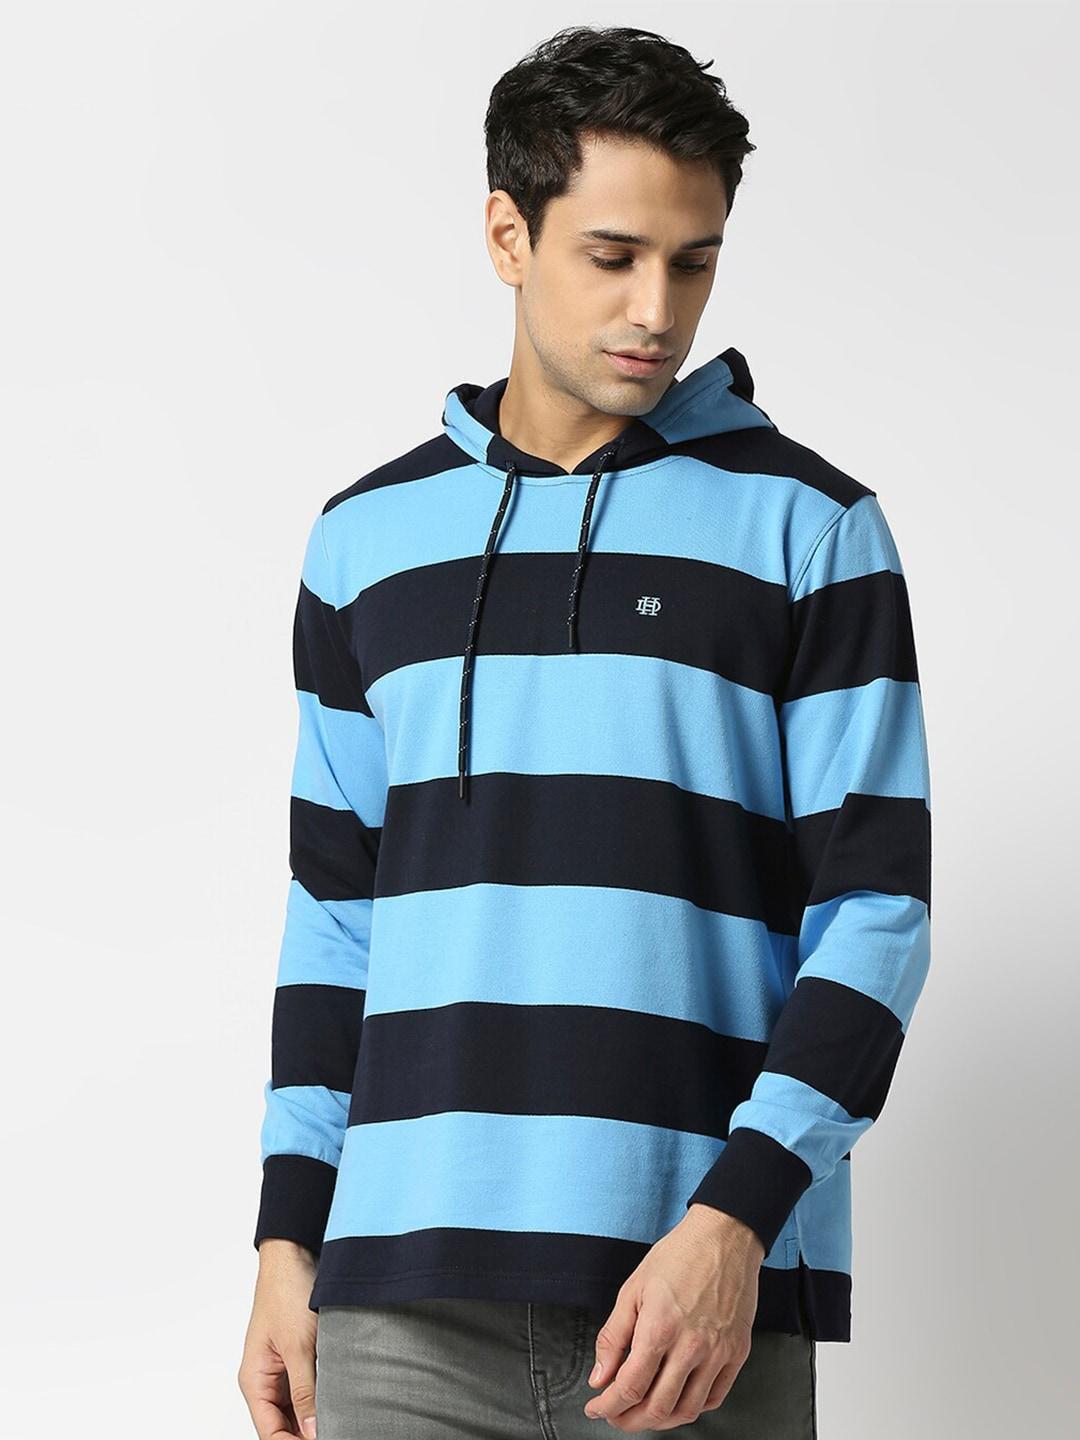 dragon-hill-hooded-neck-striped-fleece-sweatshirt